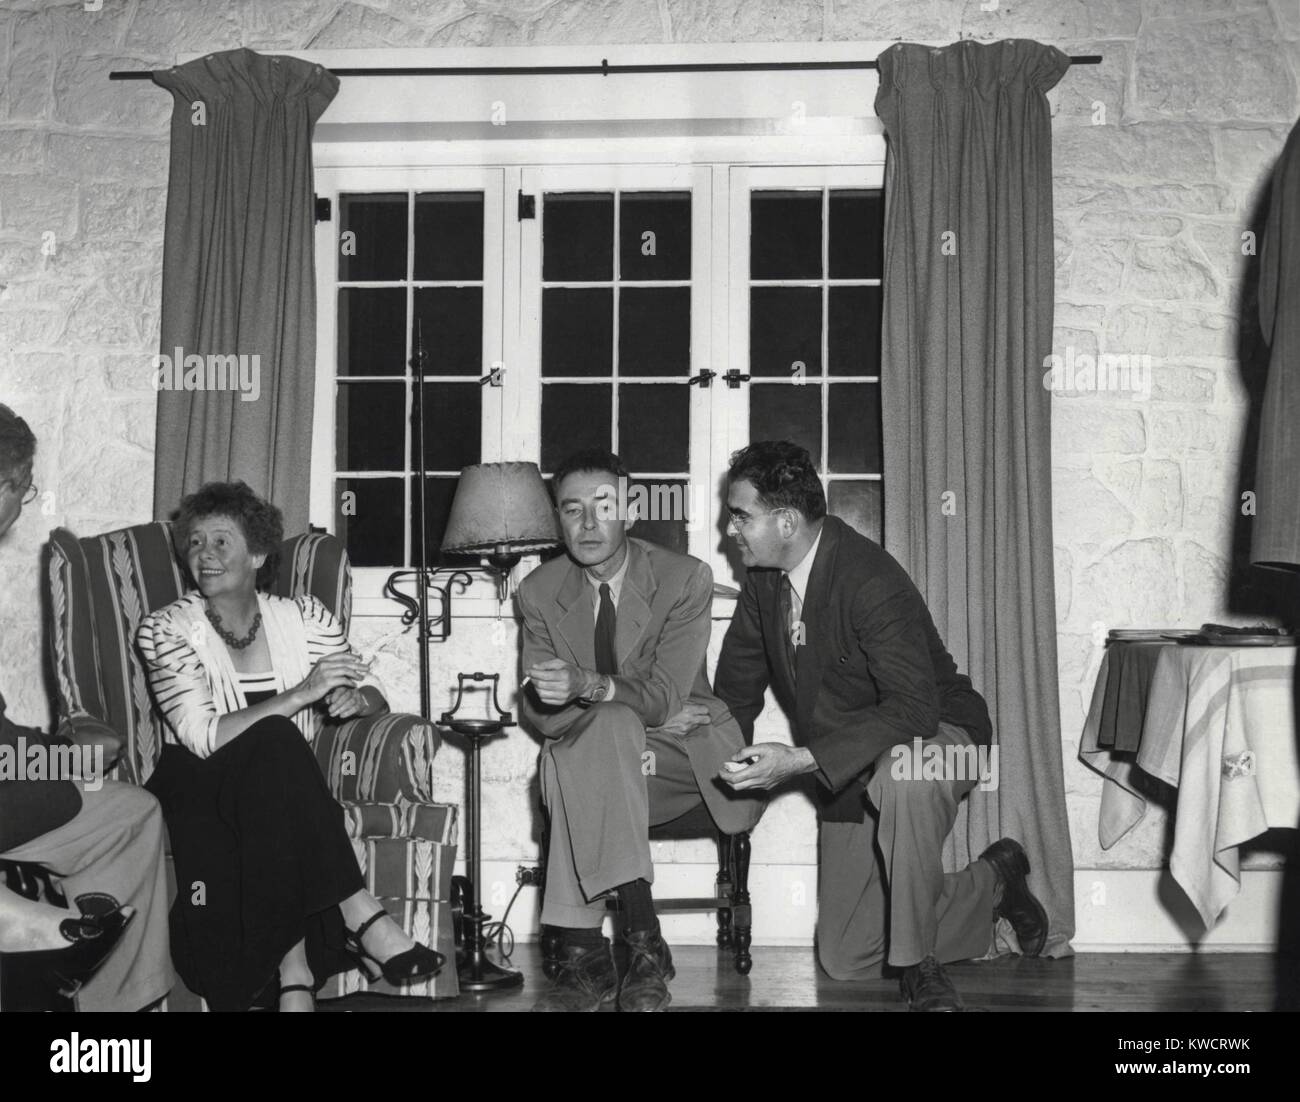 Dorothy McKibbin, Physiker Robert Oppenheimer, und Victor Weisskoph in Los Alamos. Ca. 1943-5. McKibbin war die "Gate Keeper" Clearing alle ankommenden Personen und Geräte, bevor Sie in Los Alamos Labor zugelassen werden konnte. - (BSLOC 2015 1 85) Stockfoto